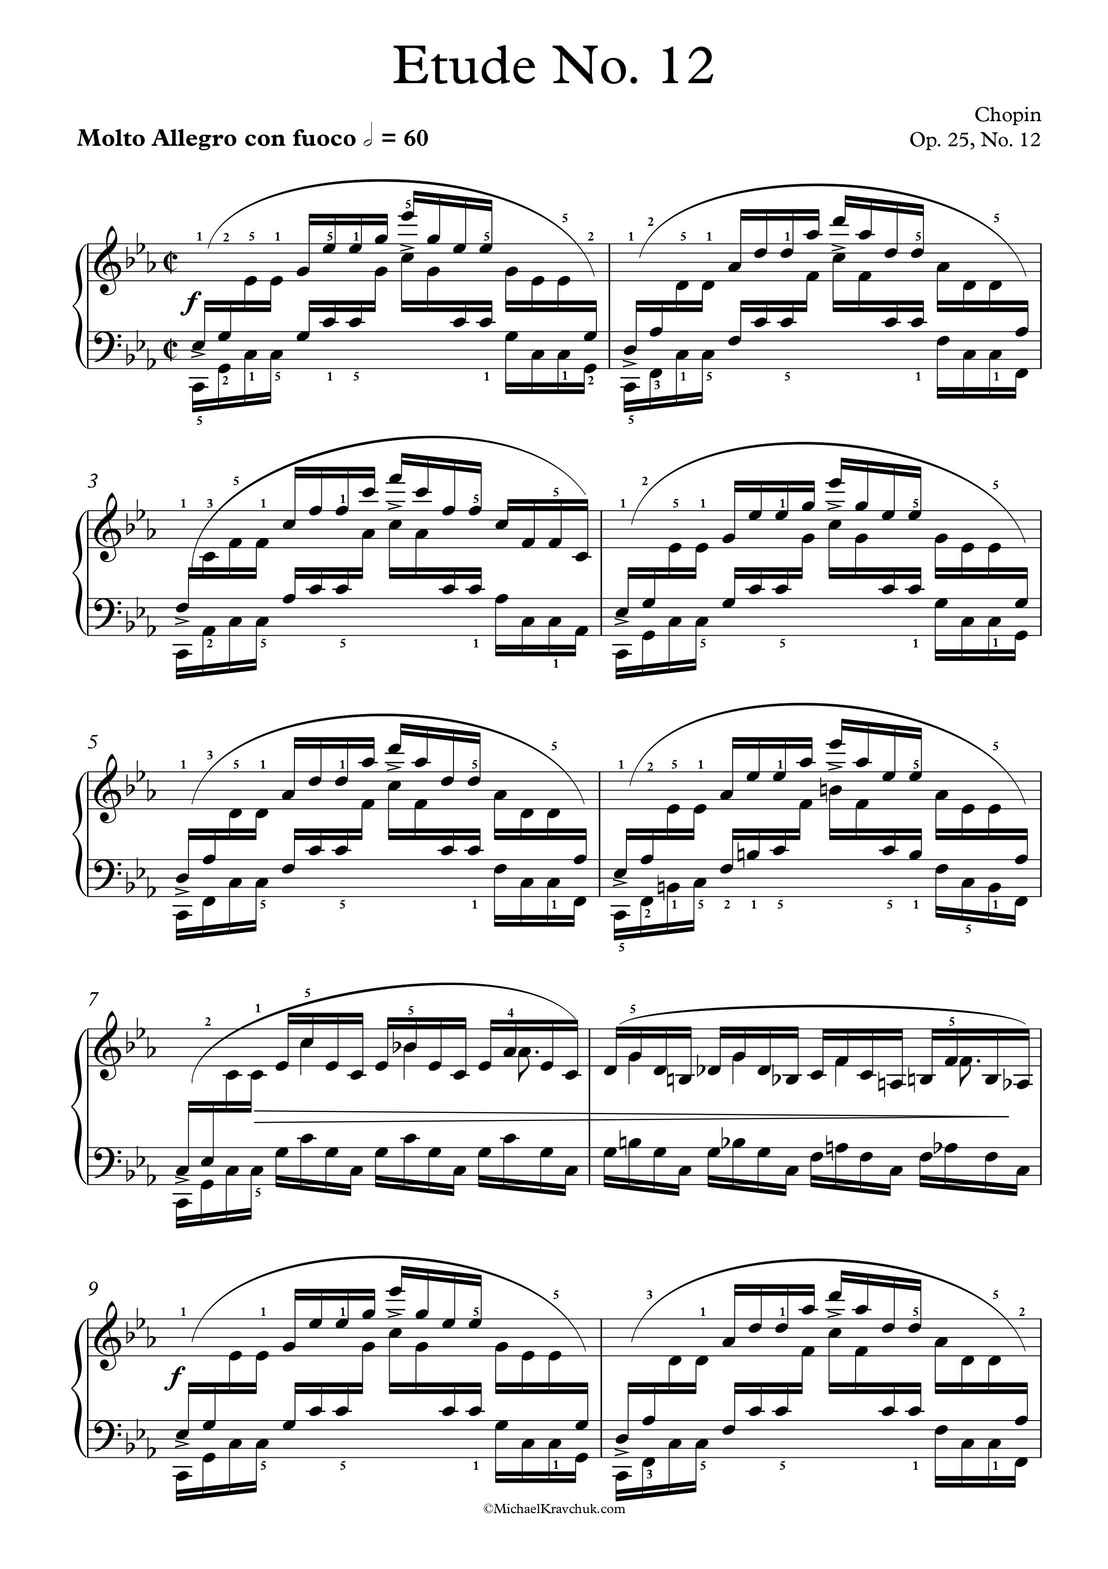 Free Piano Sheet Music - Etude No. 24 - Ocean - Op. 25, No. 12 - Chopin